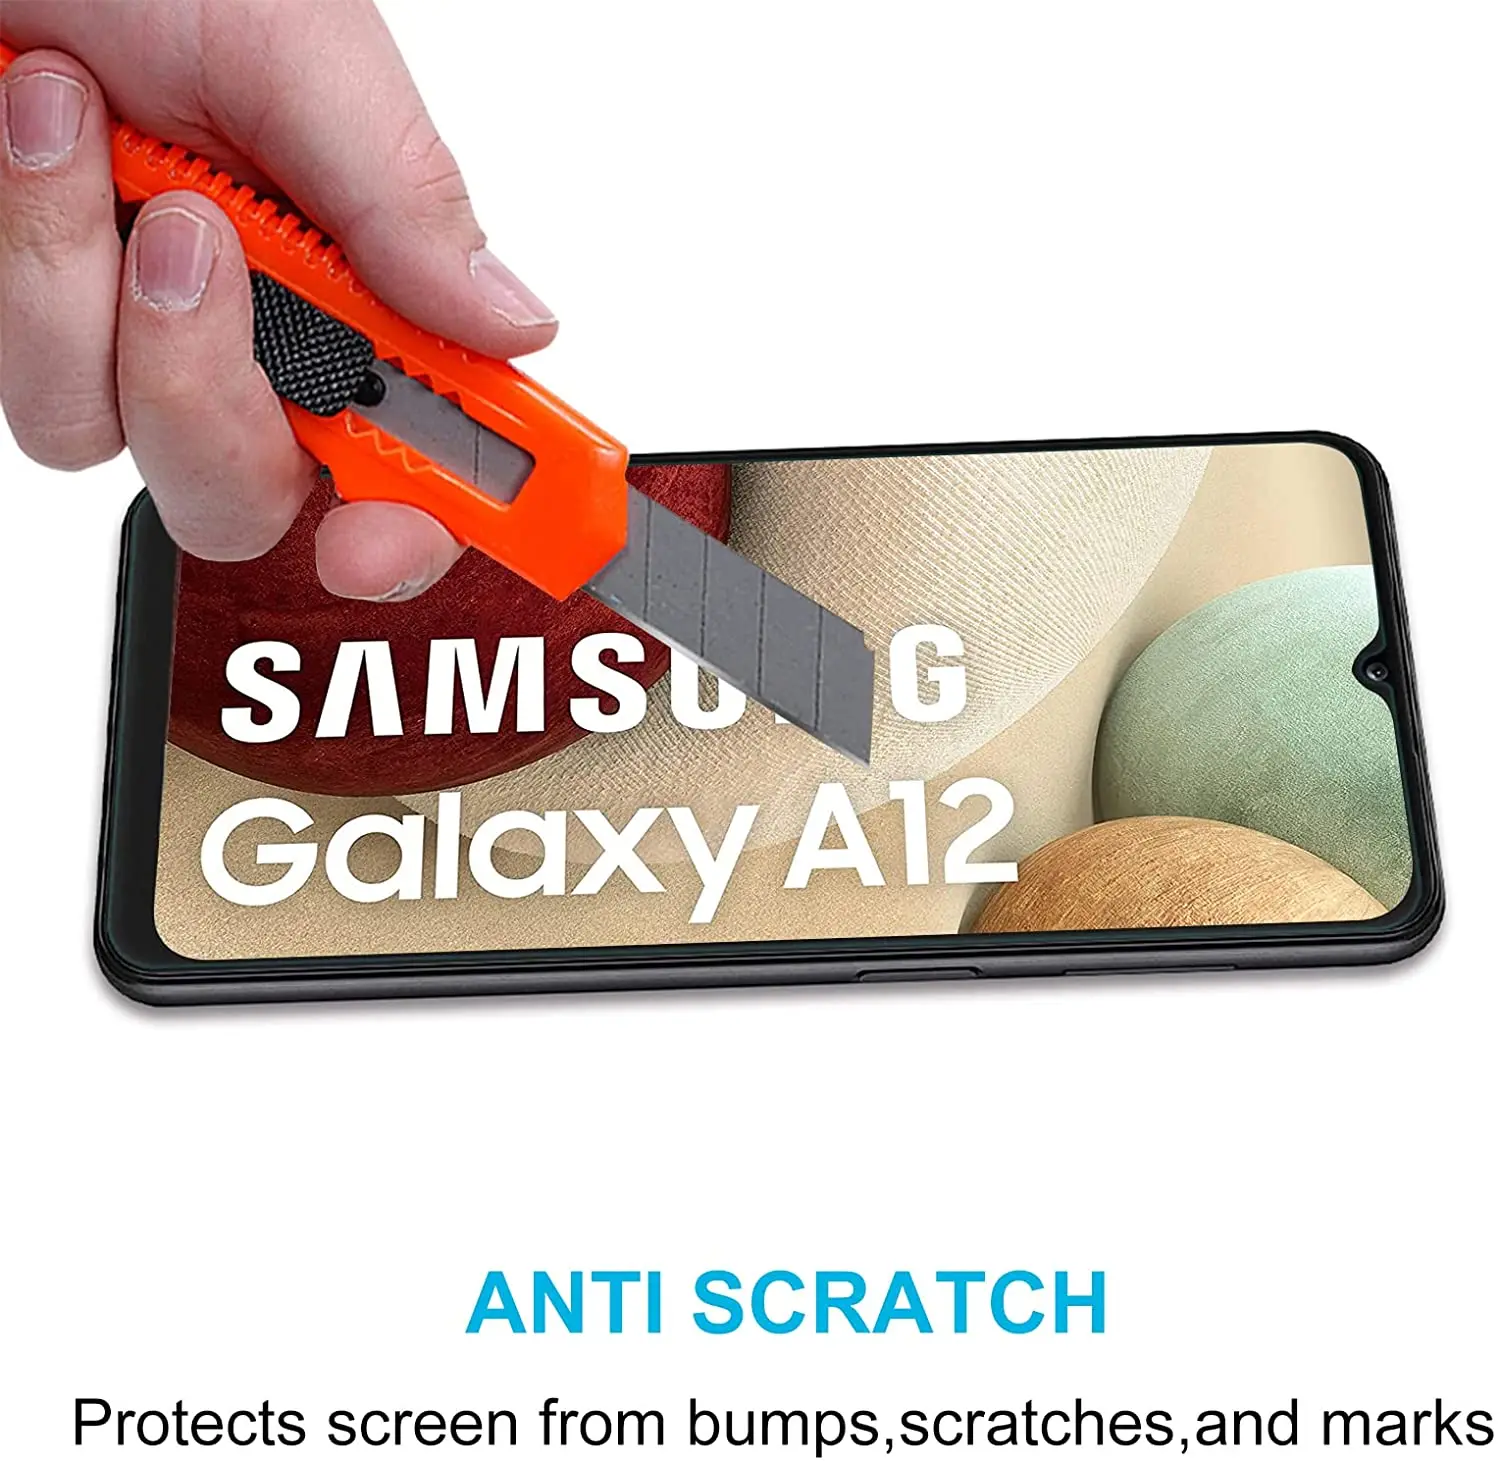 2ชิ้น/4ชิ้นกระจกนิรภัยสำหรับ Samsung Galaxy A12 M12 A12 Nacho ฟิล์มกระจกป้องกันหน้าจอ F12